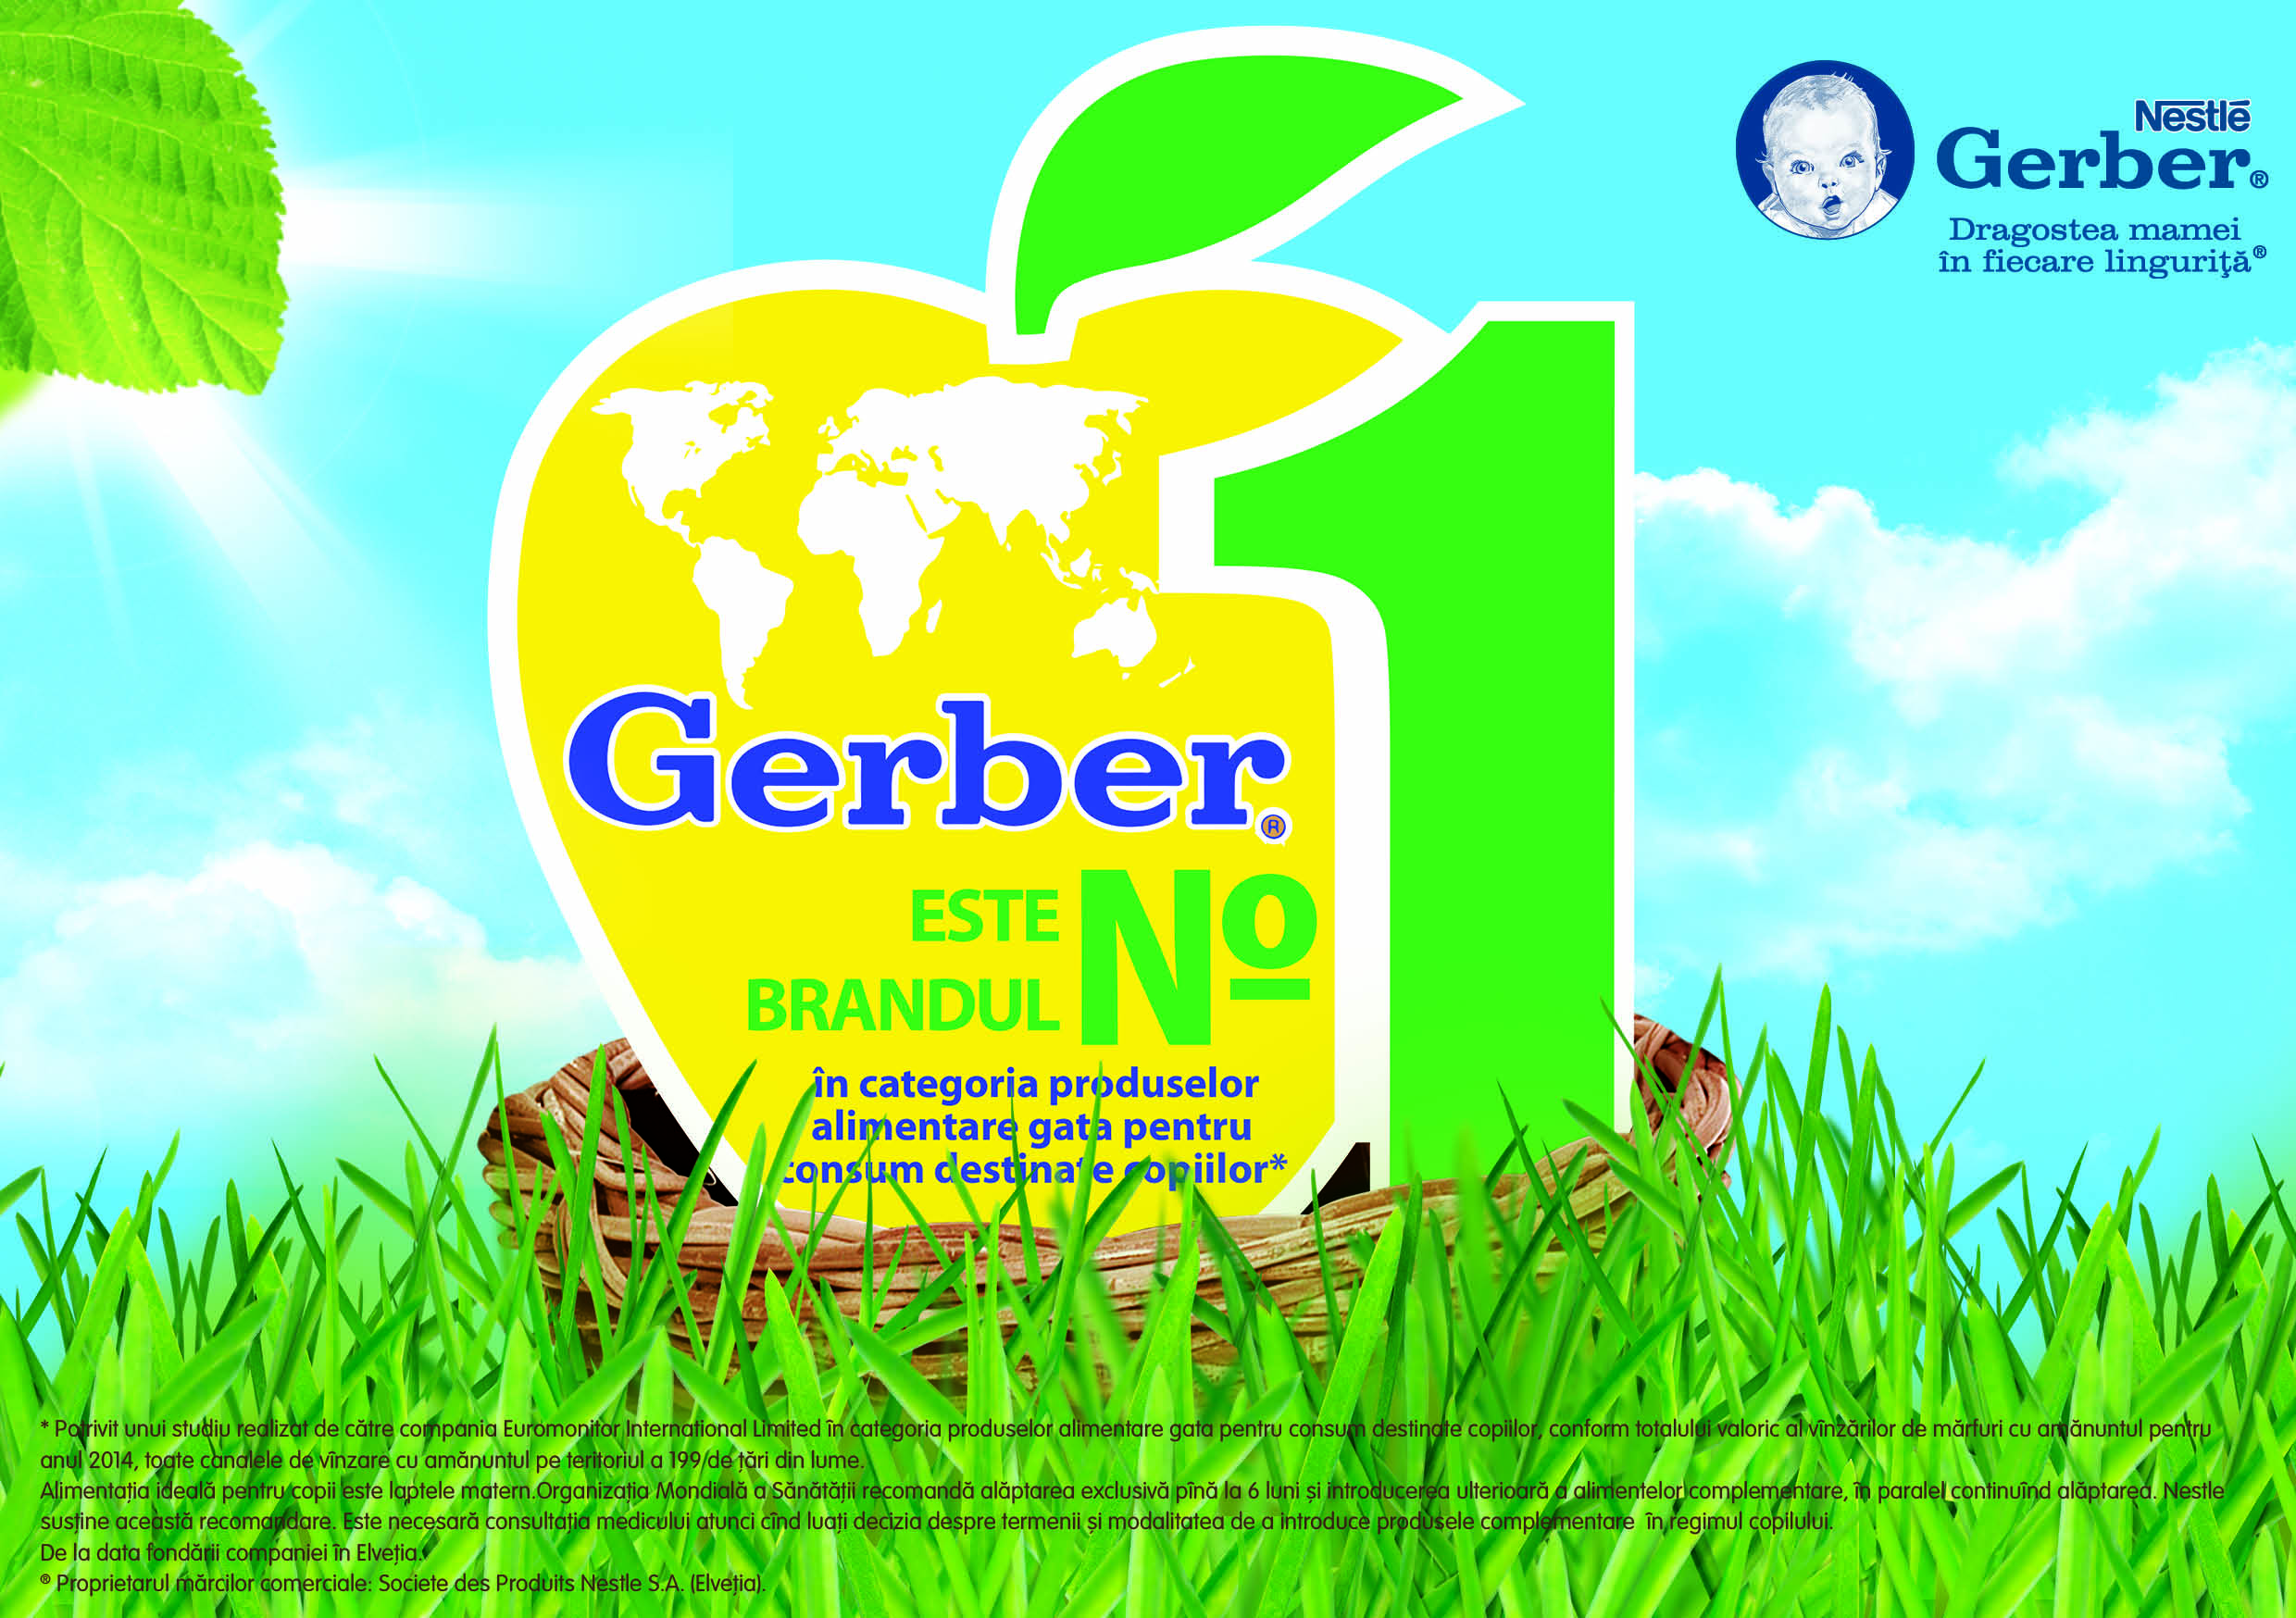 Gerber - бренд № 1 в мире в категории готовые к употреблению продукты прикорма*